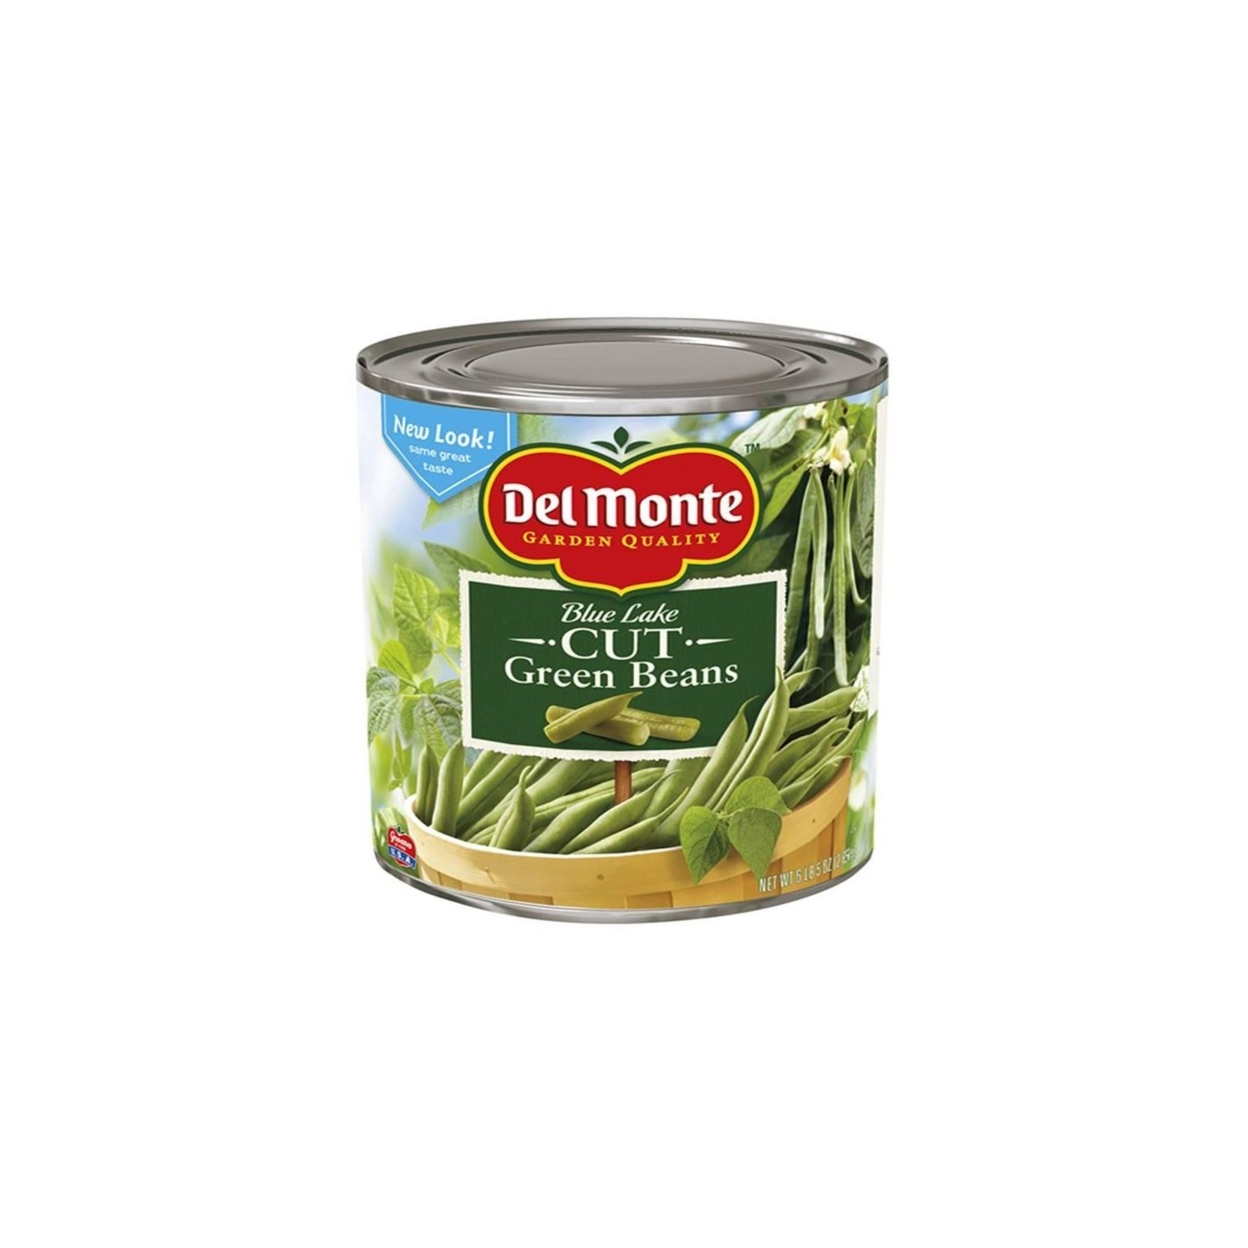 Del Monte Fancy Cut Green Beans - 101 Ounce